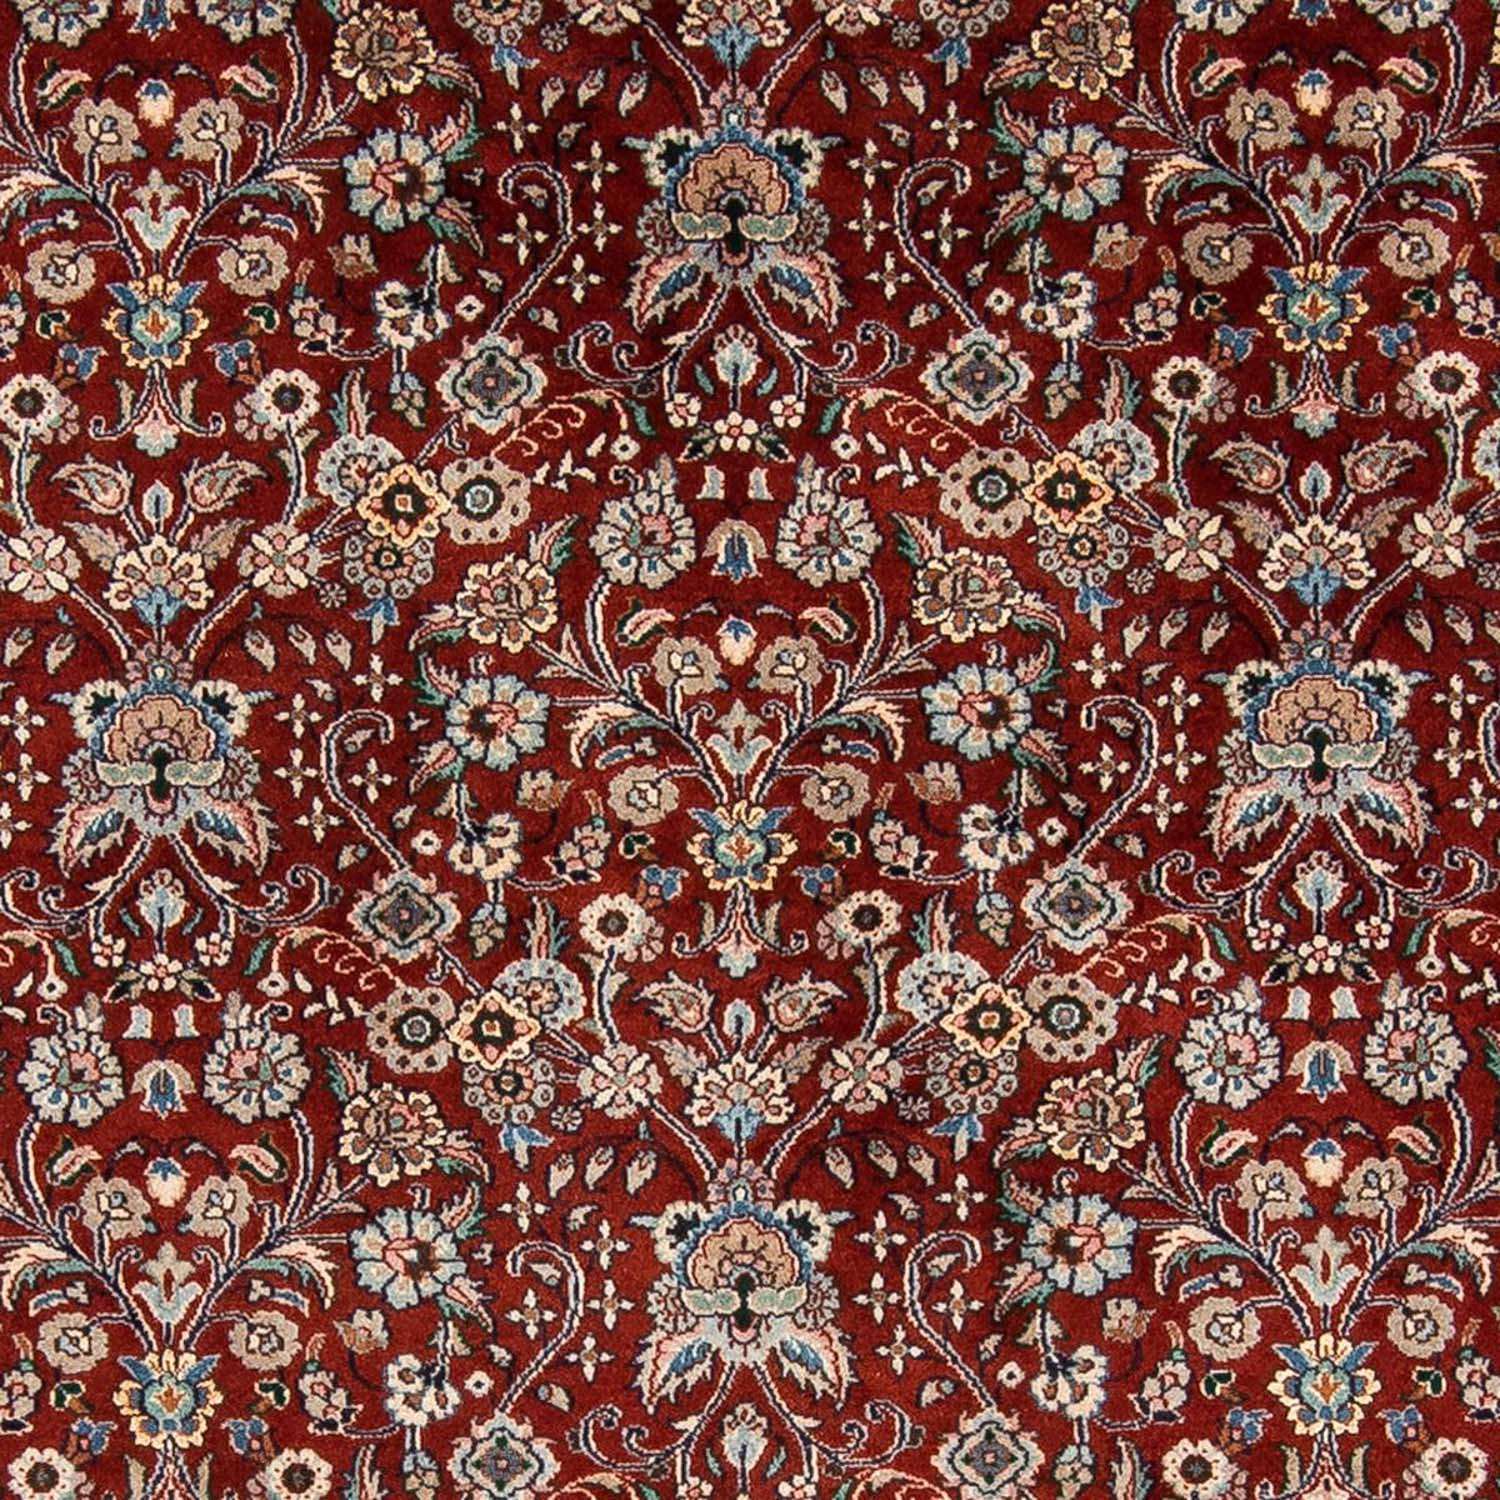 Perzisch tapijt - Klassiek - 290 x 197 cm - rood